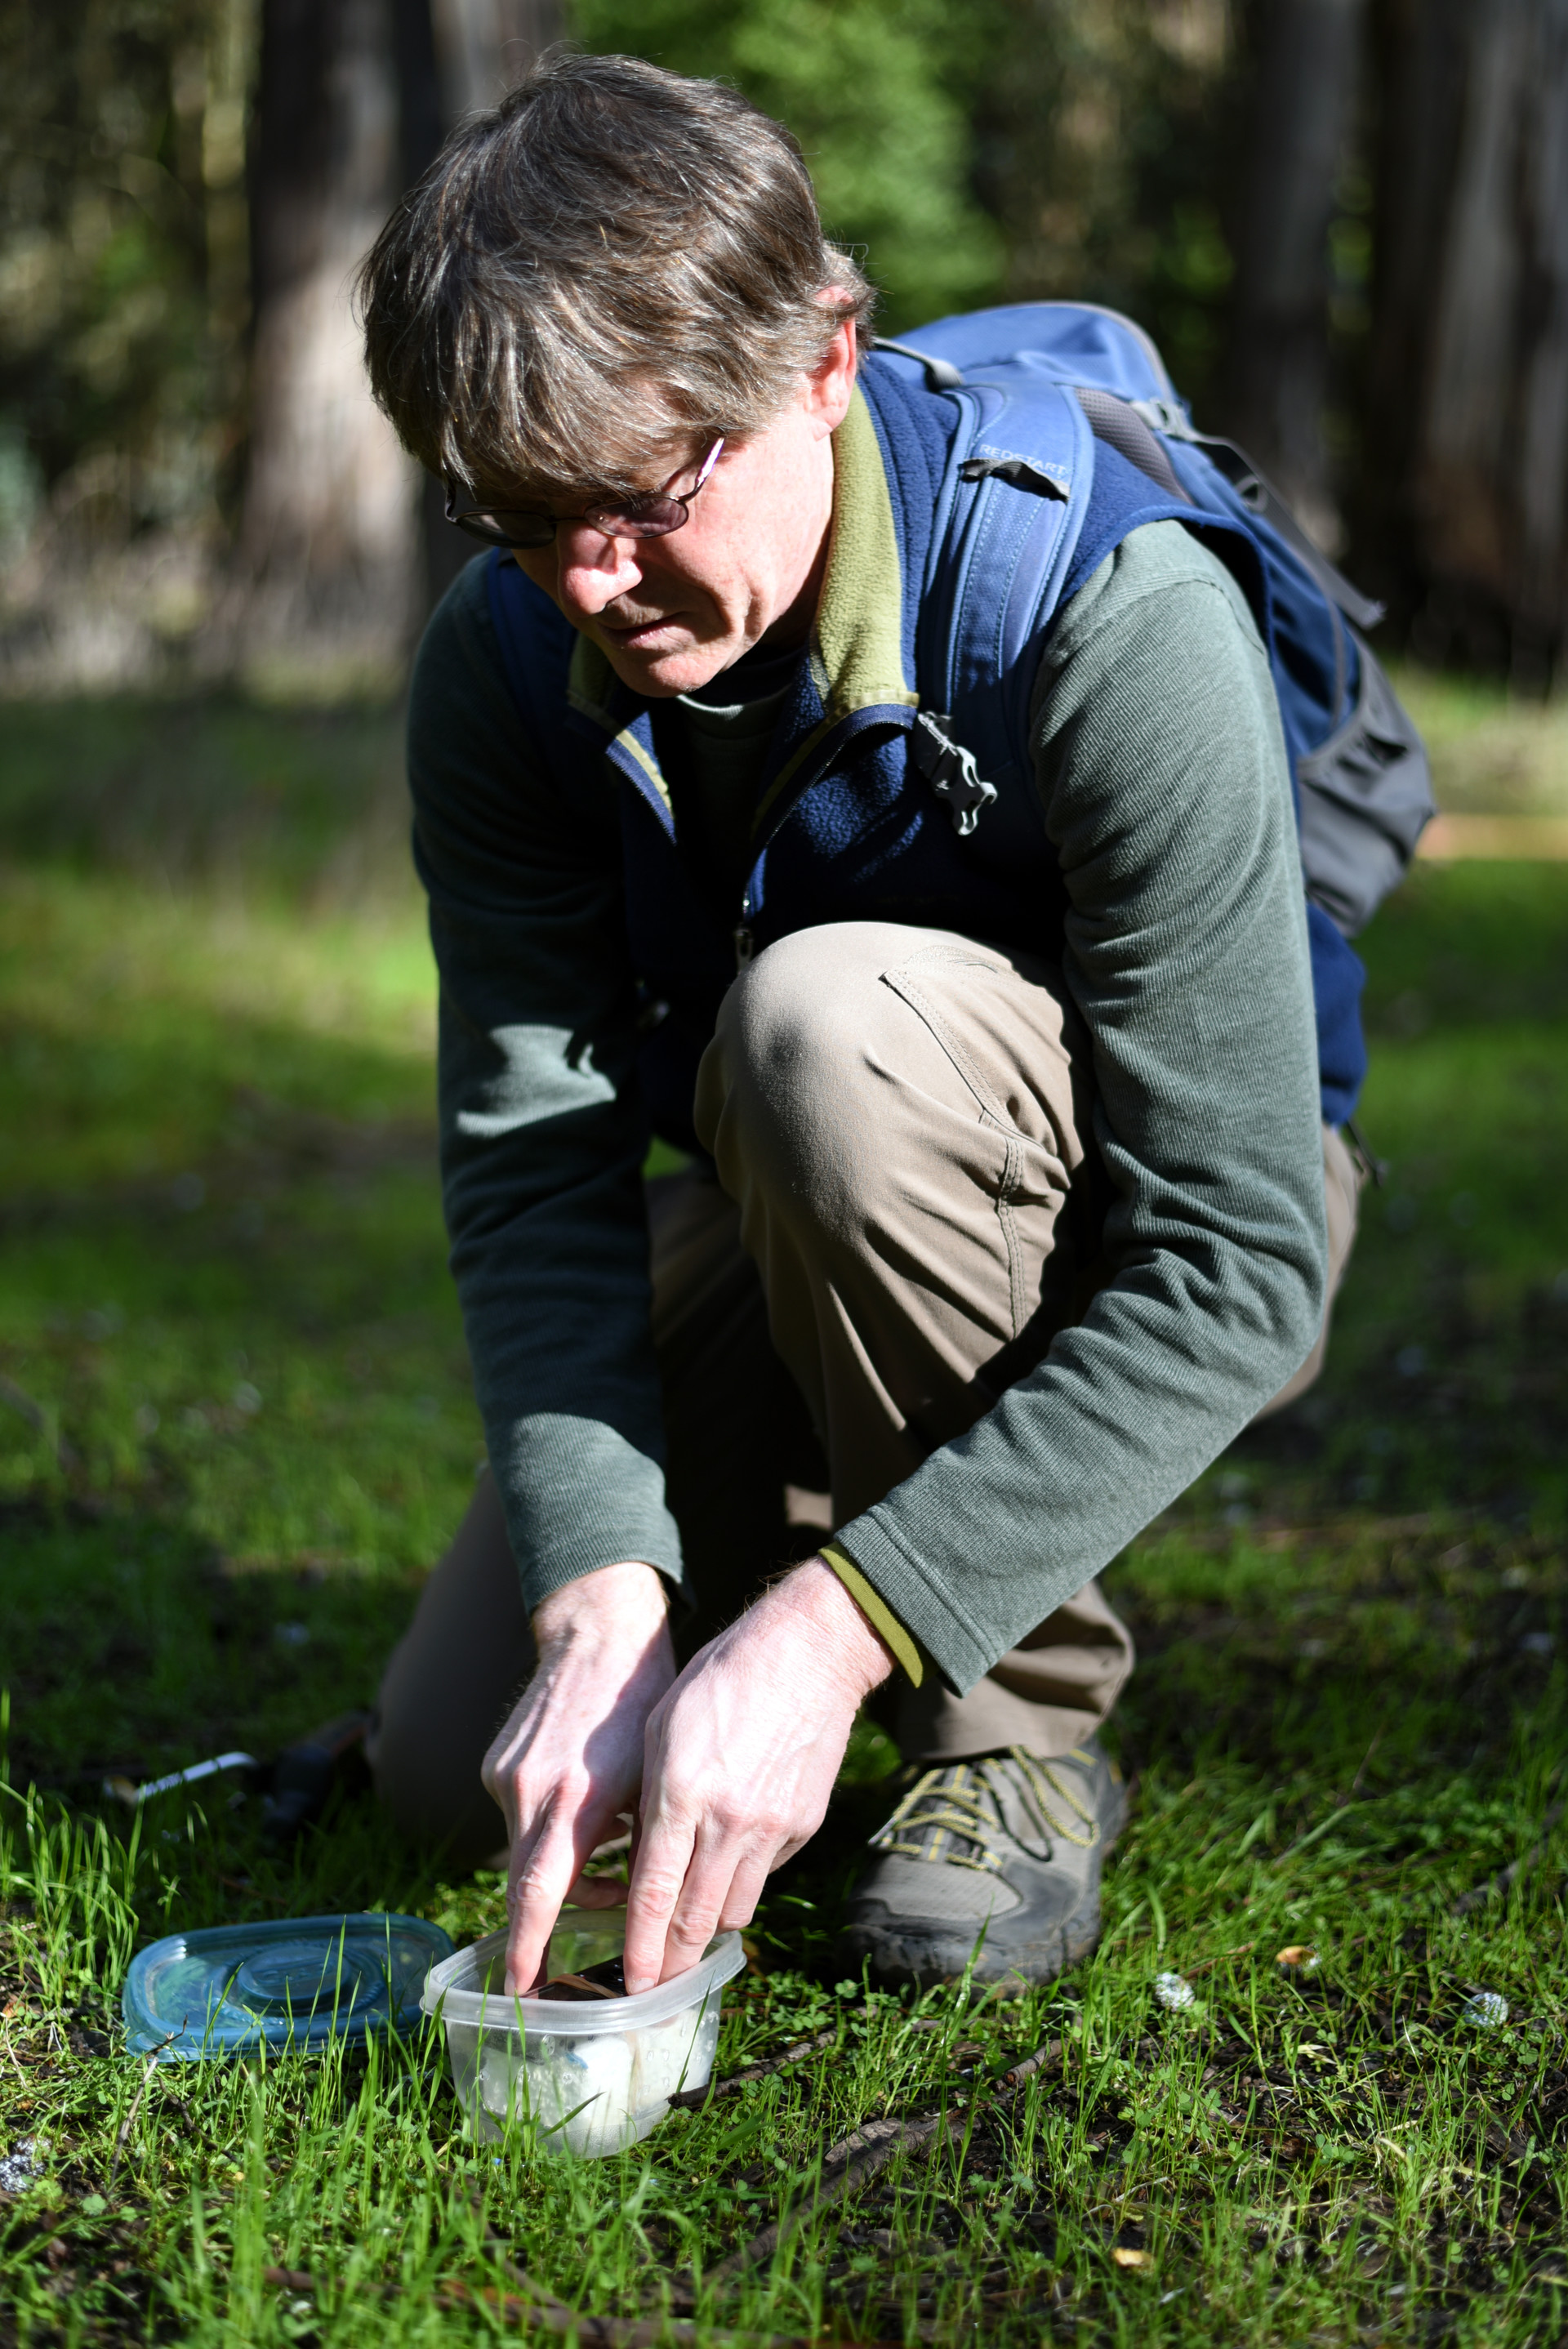 Brett Furnas placing a field recorder in Tilden Regional Park